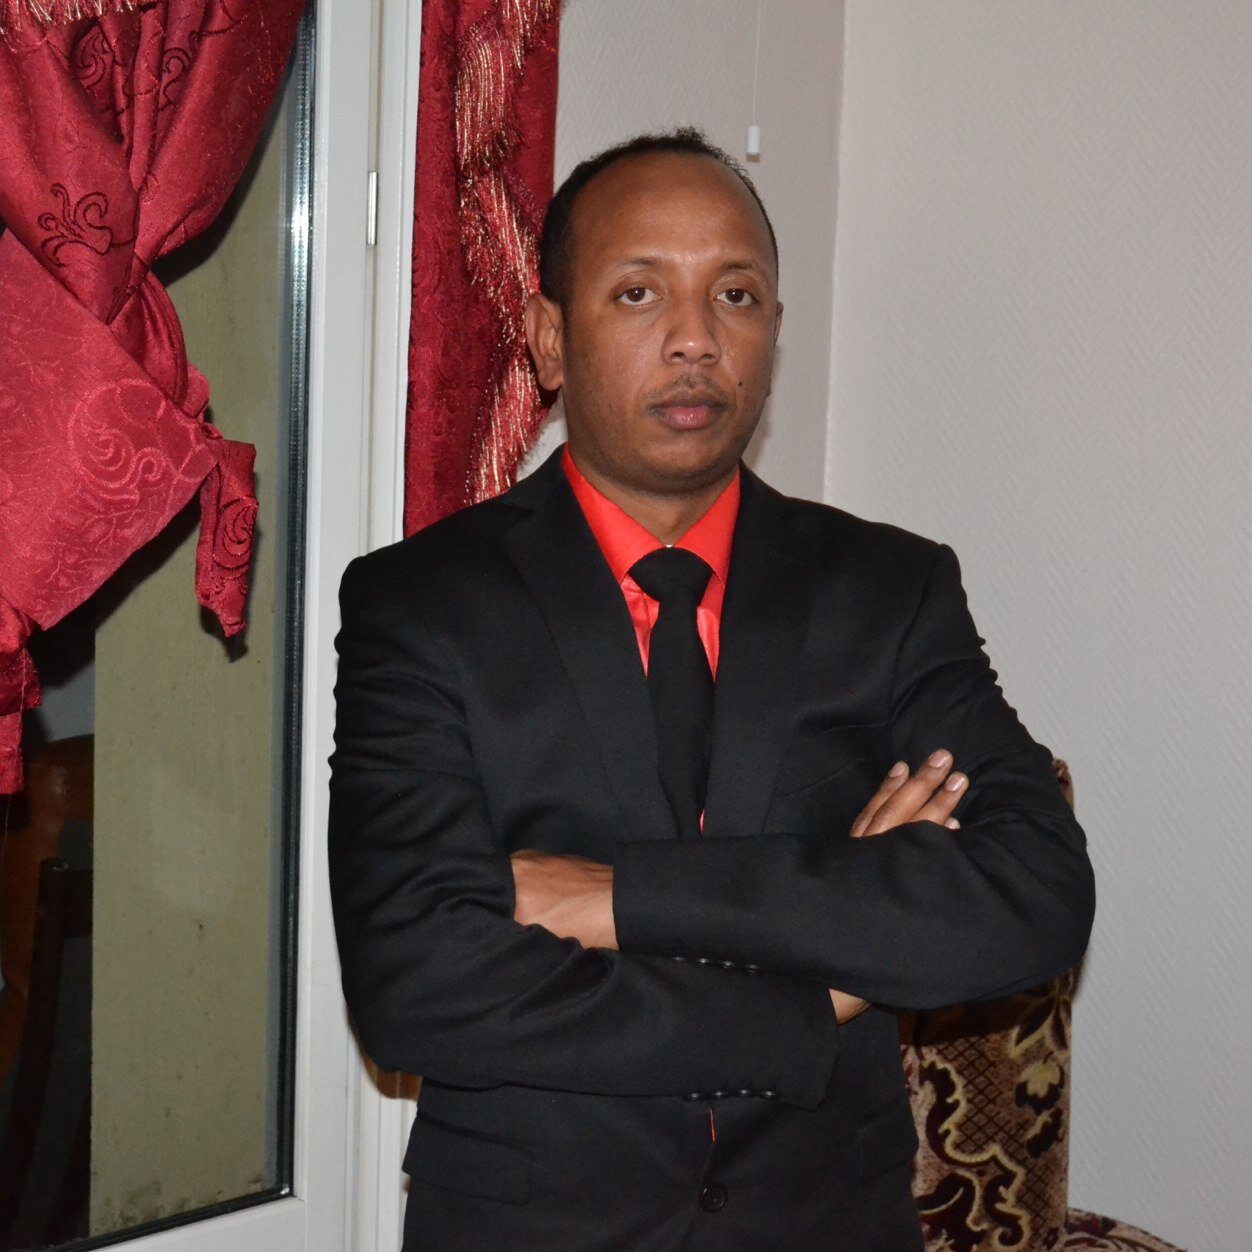 Born in Mogadisho